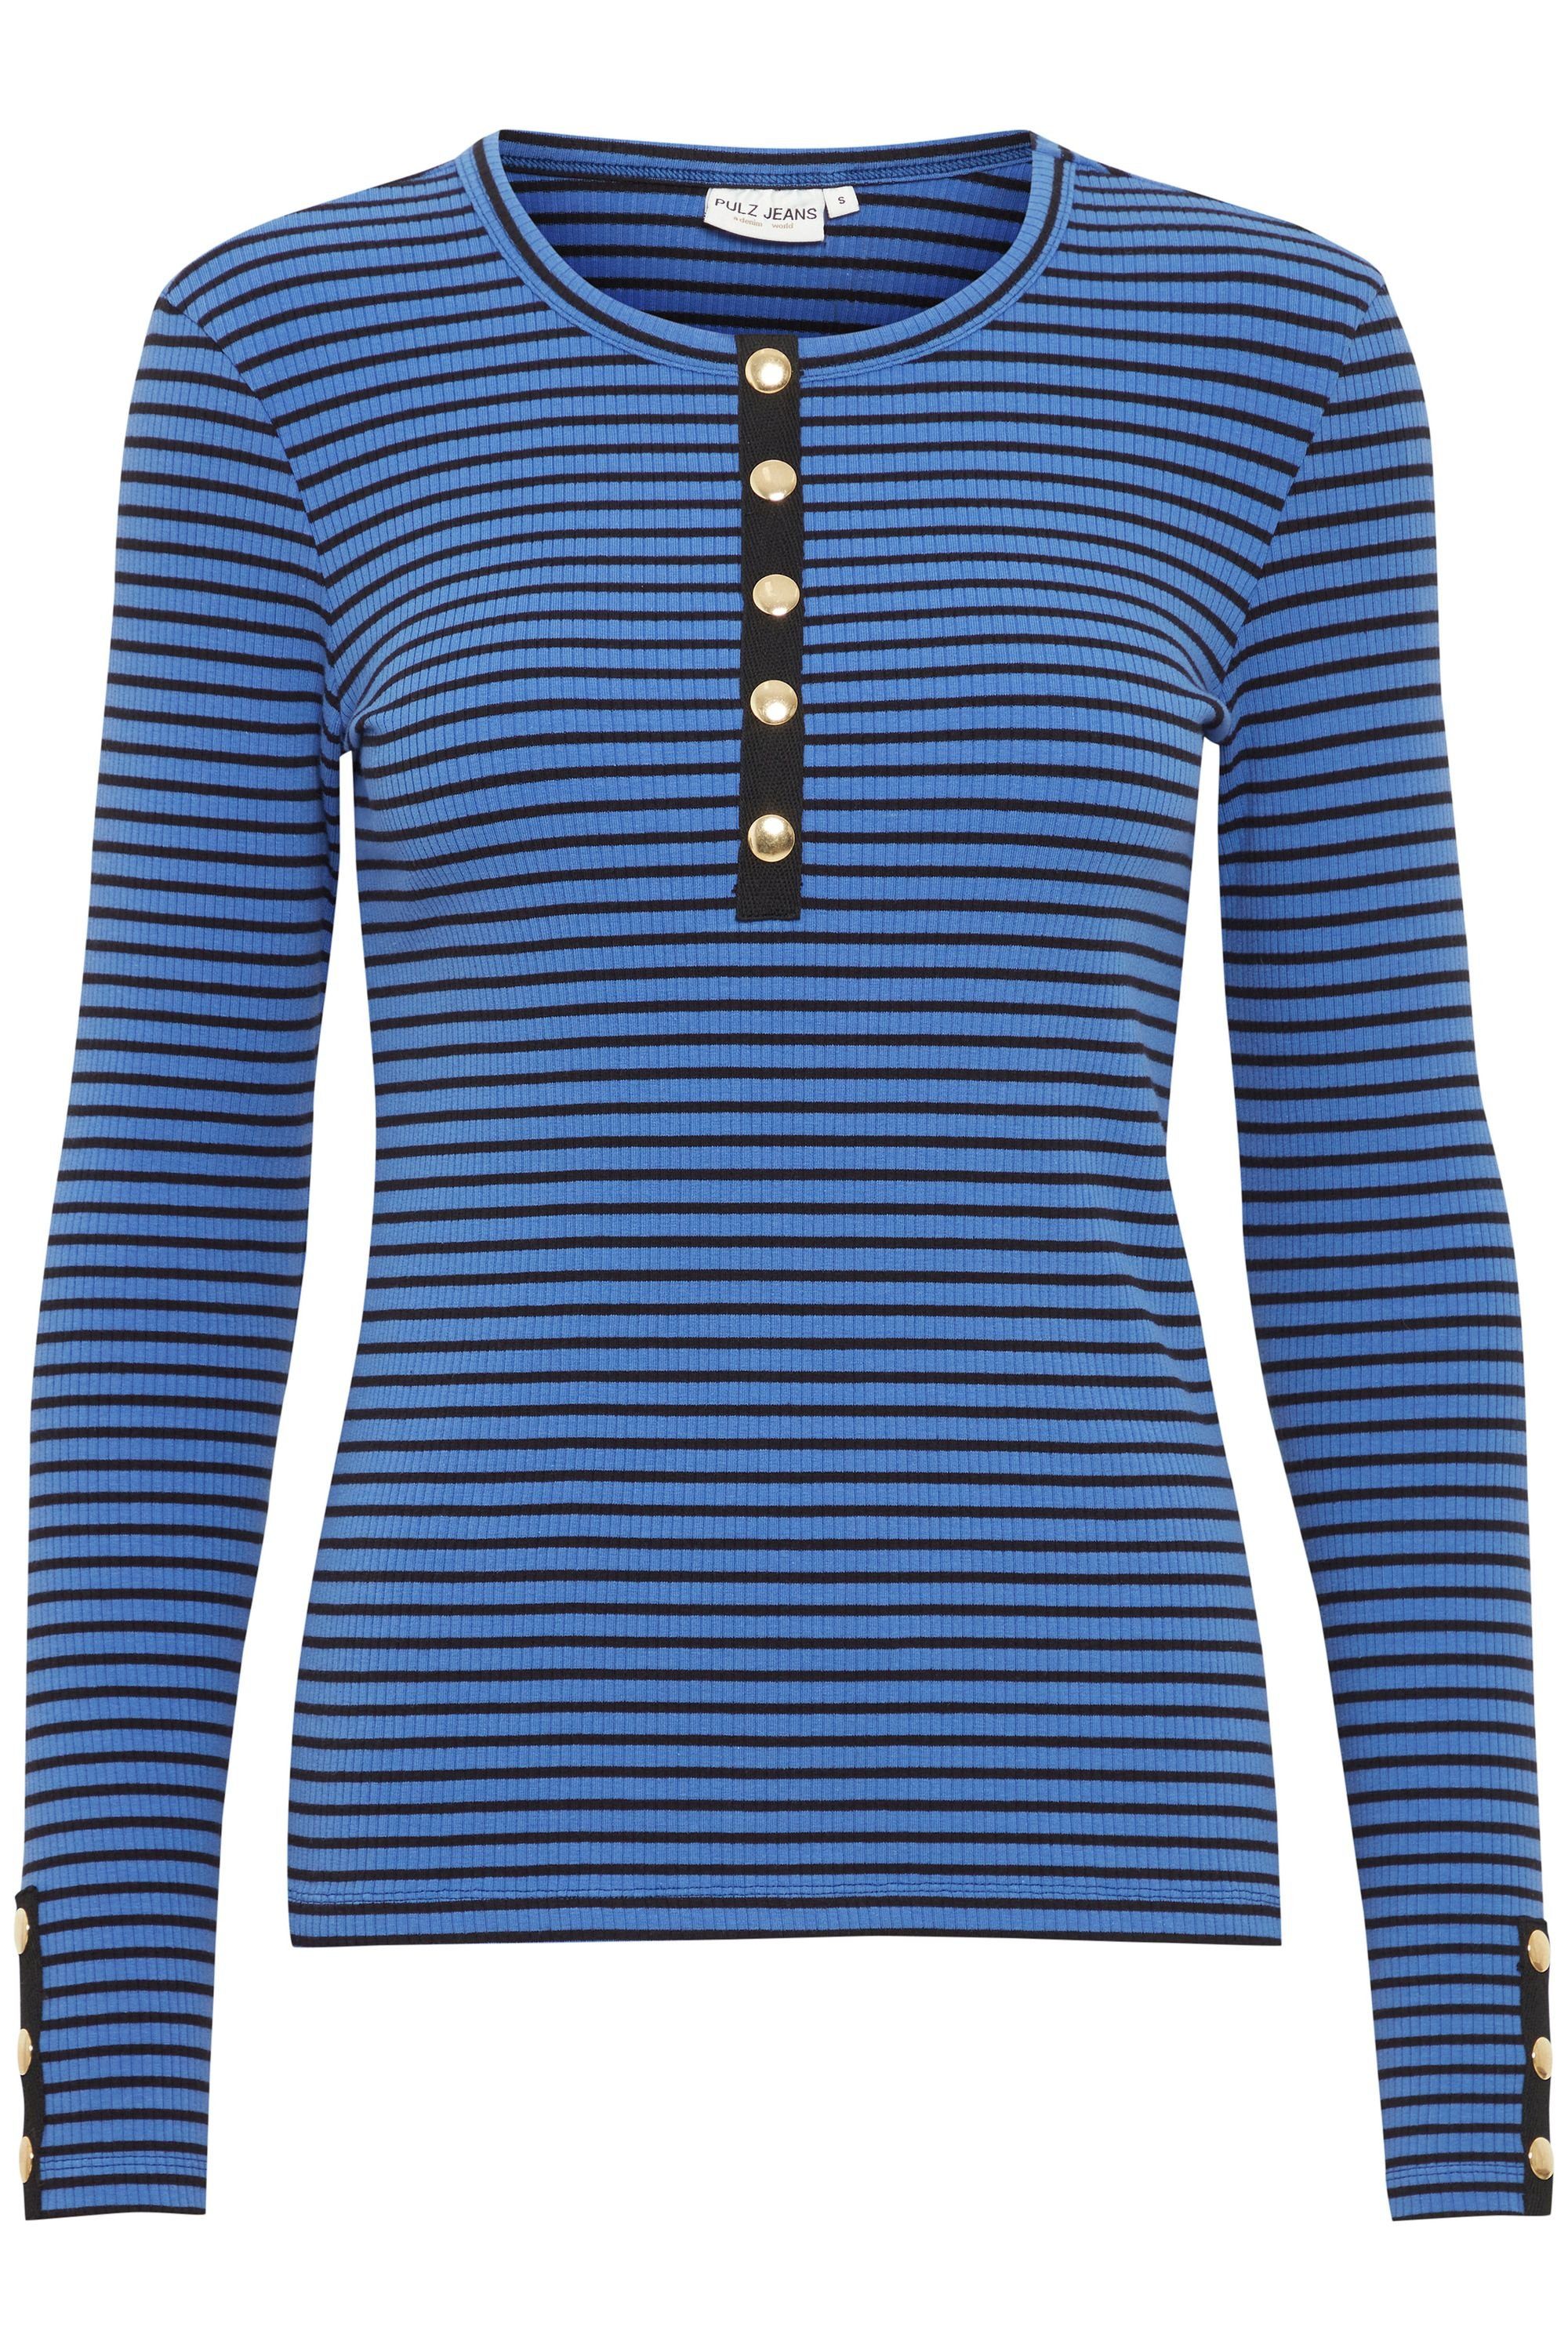 Pulz Jeans PZHAVANA Dazzling 50207348 Sl (201964) Blue Stripe Longsleeve Long Tshirt 